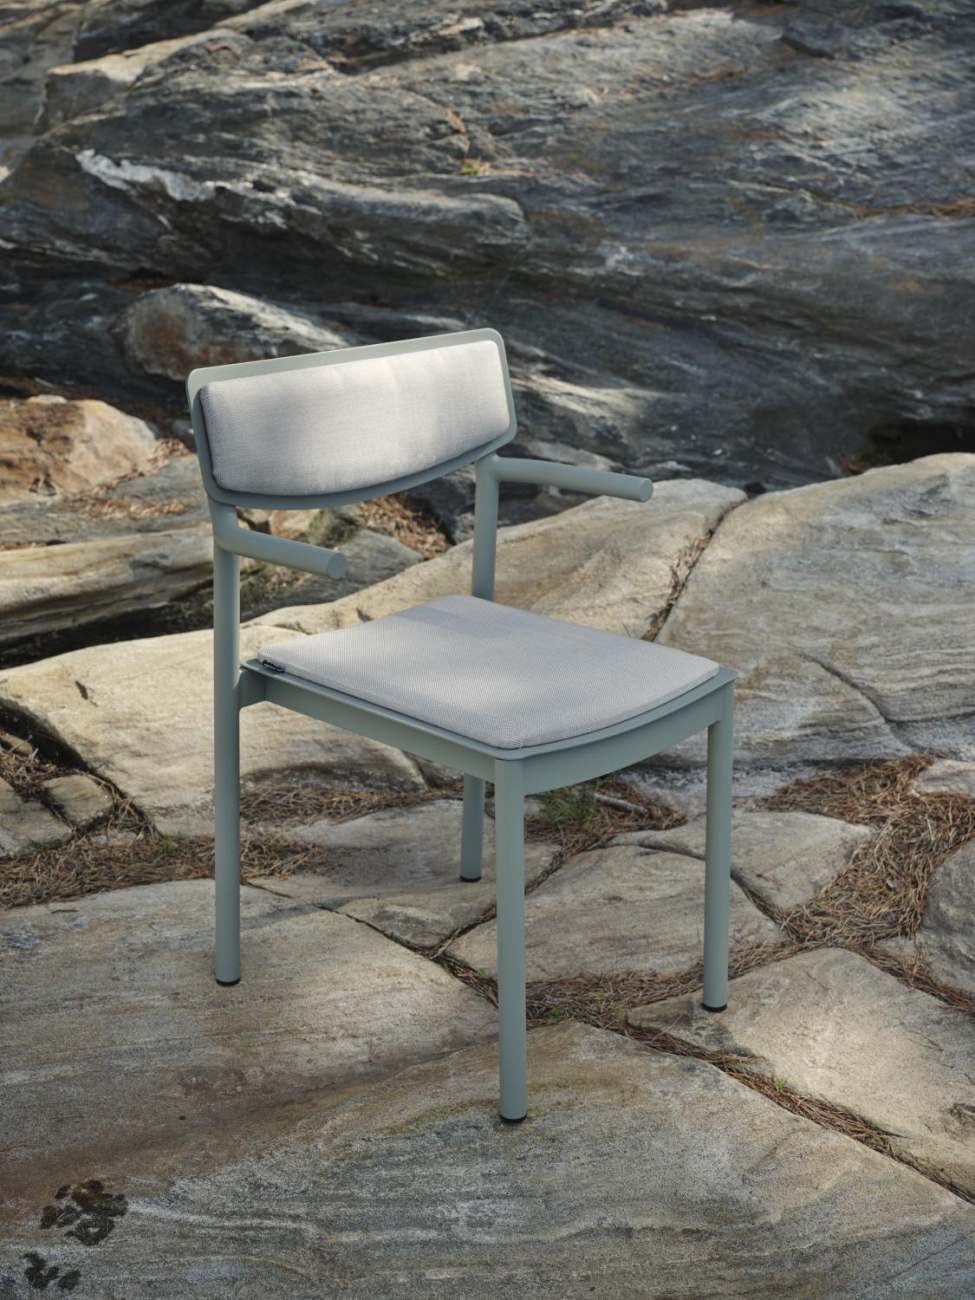 Der Gartenstuhl Gusty überzeugt mit seinem modernen Design. Gefertigt wurde er aus Stoff, welches einen hellgrauen Farbton besitzt. Das Gestell ist aus Metall und hat eine grüne Farbe. Die Sitzhöhe des Stuhls beträgt 47 cm.